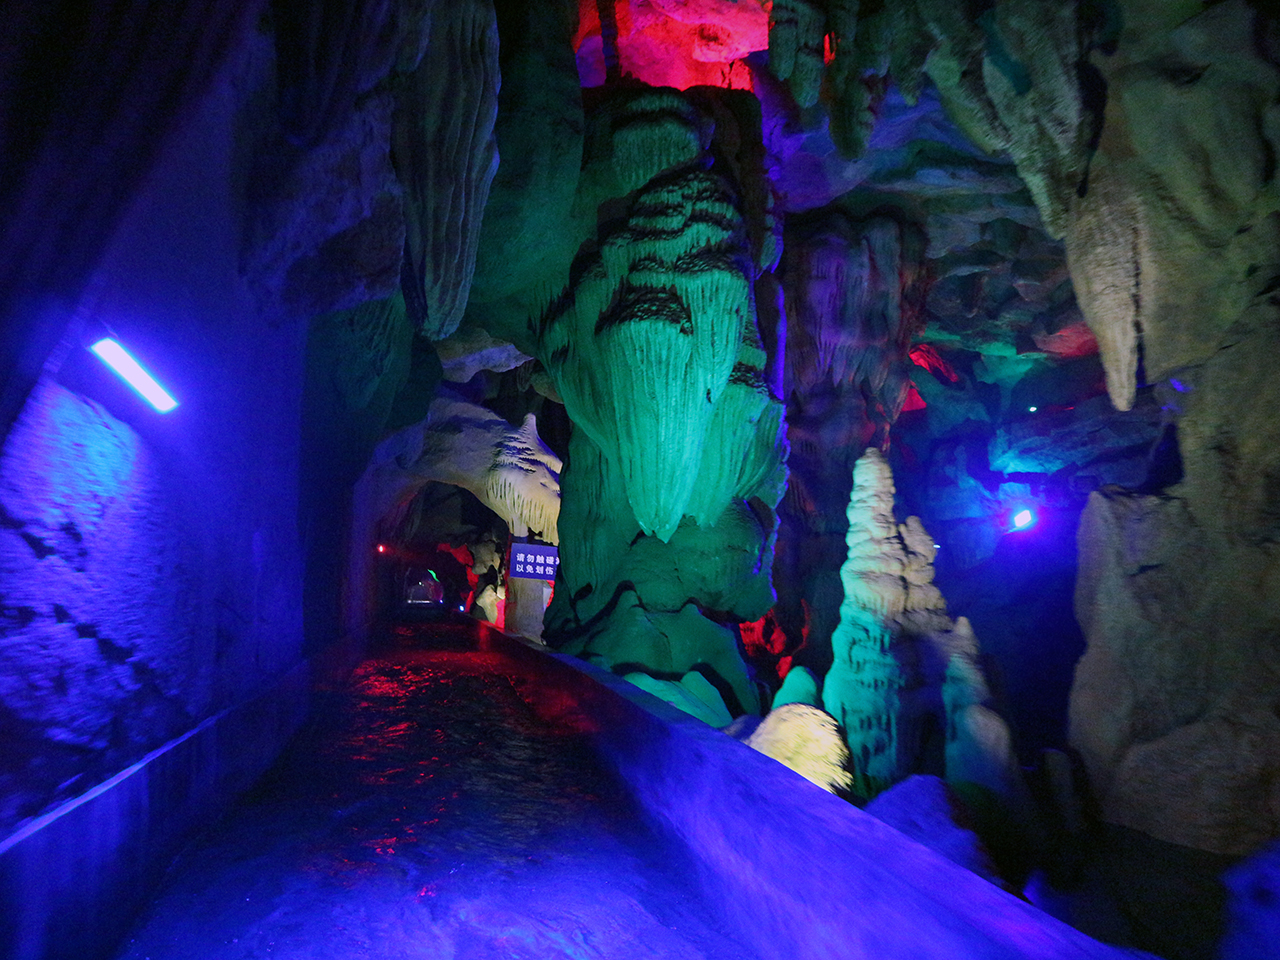  지하대열곡 석회암 동굴에서는 지하 수로를 따라 고무보트를 타고 래프팅을 즐길 수 있다.